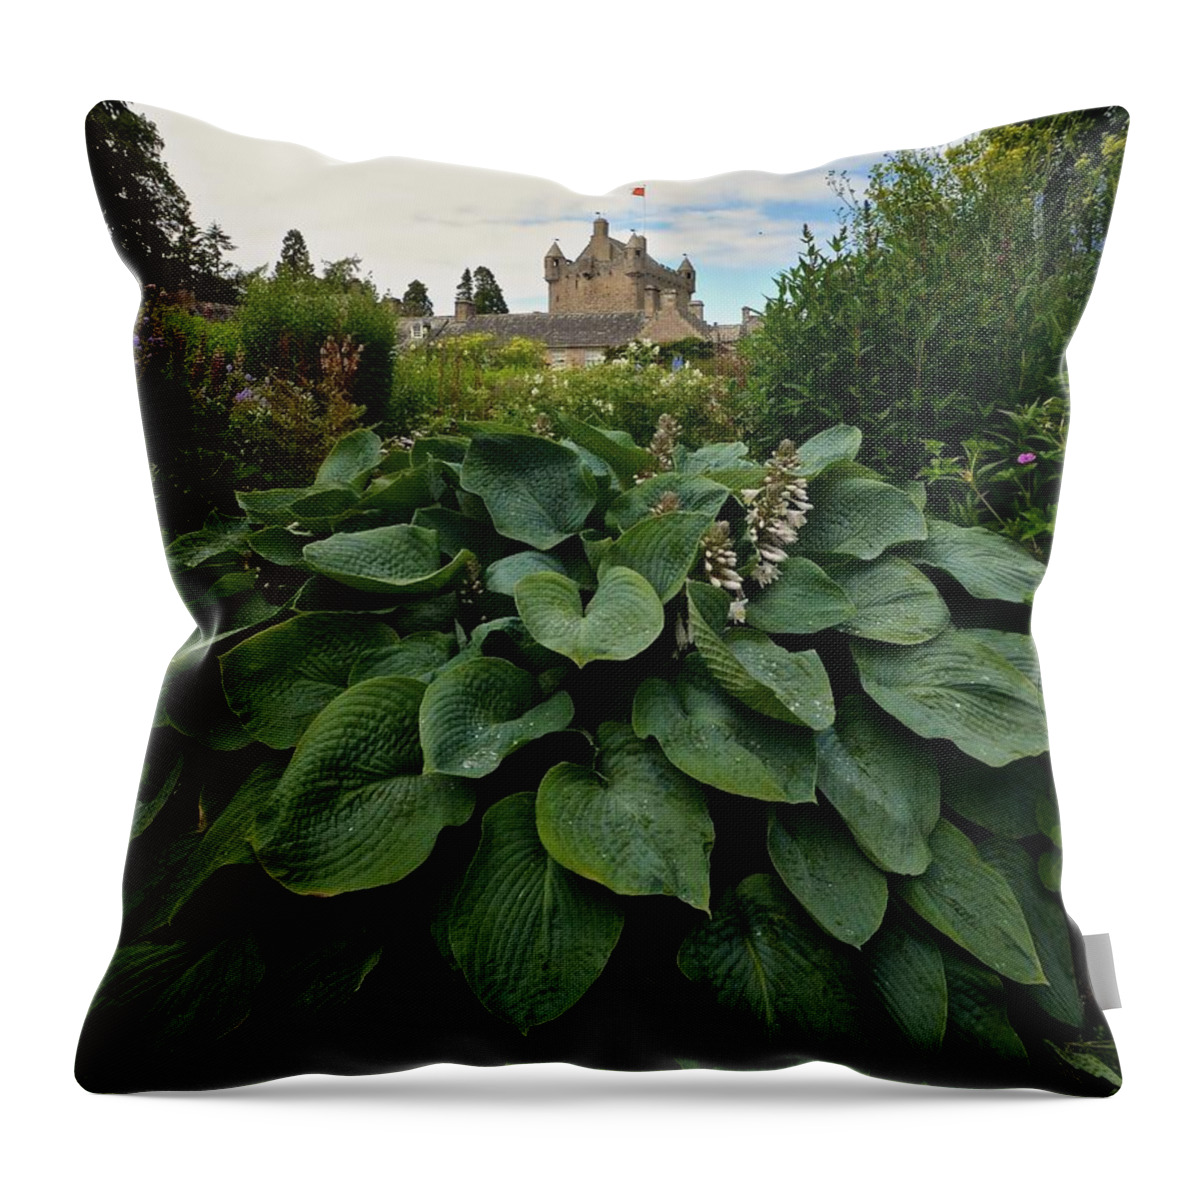 Hosta Throw Pillow featuring the photograph Hosta at Cowdor Castle by Matt MacMillan